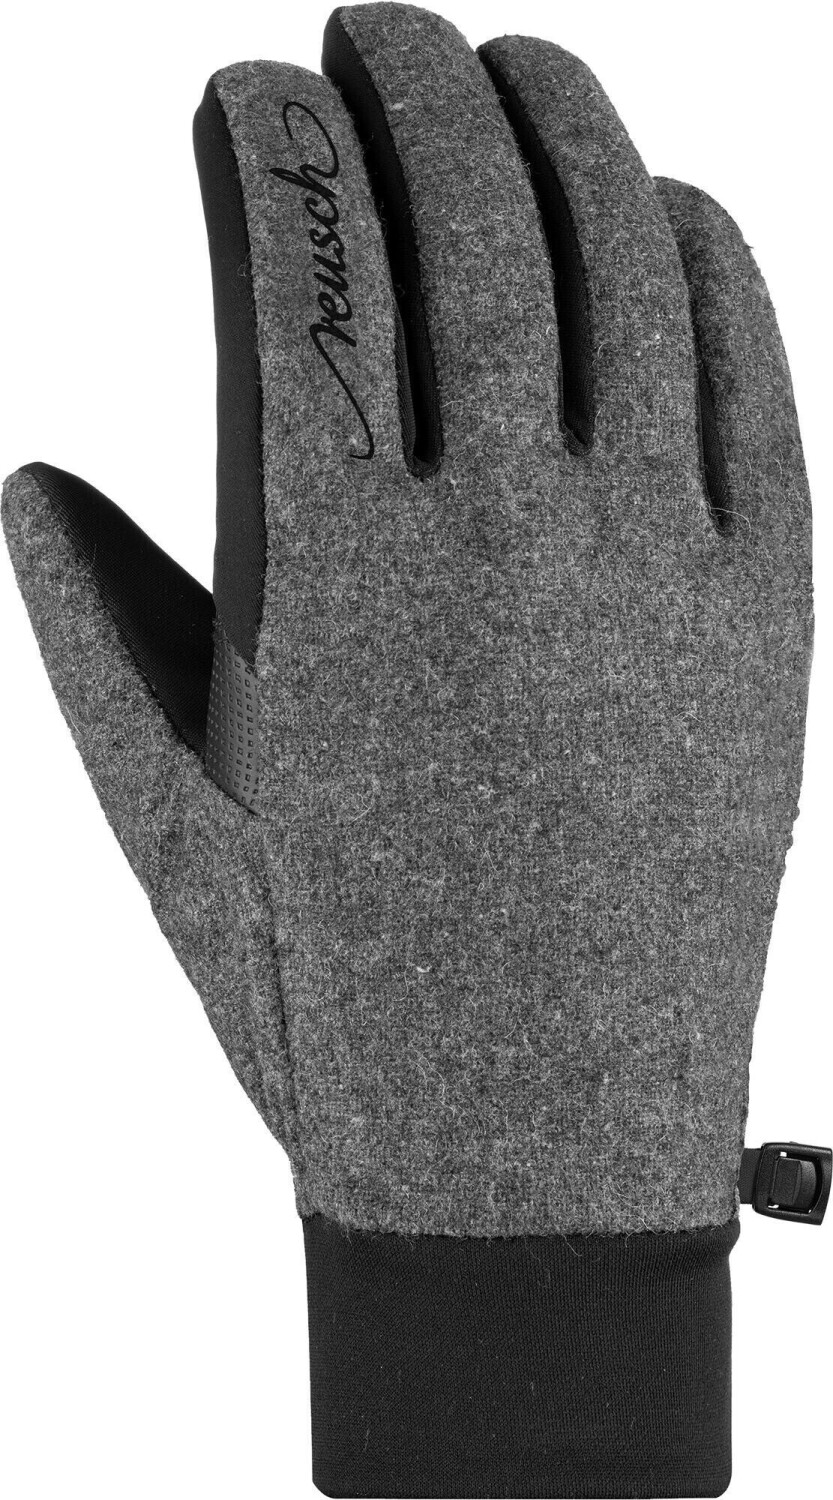 Reusch Saskia Touch-Tech Glove black/greyalpine melange ab 28,05 € |  Preisvergleich bei